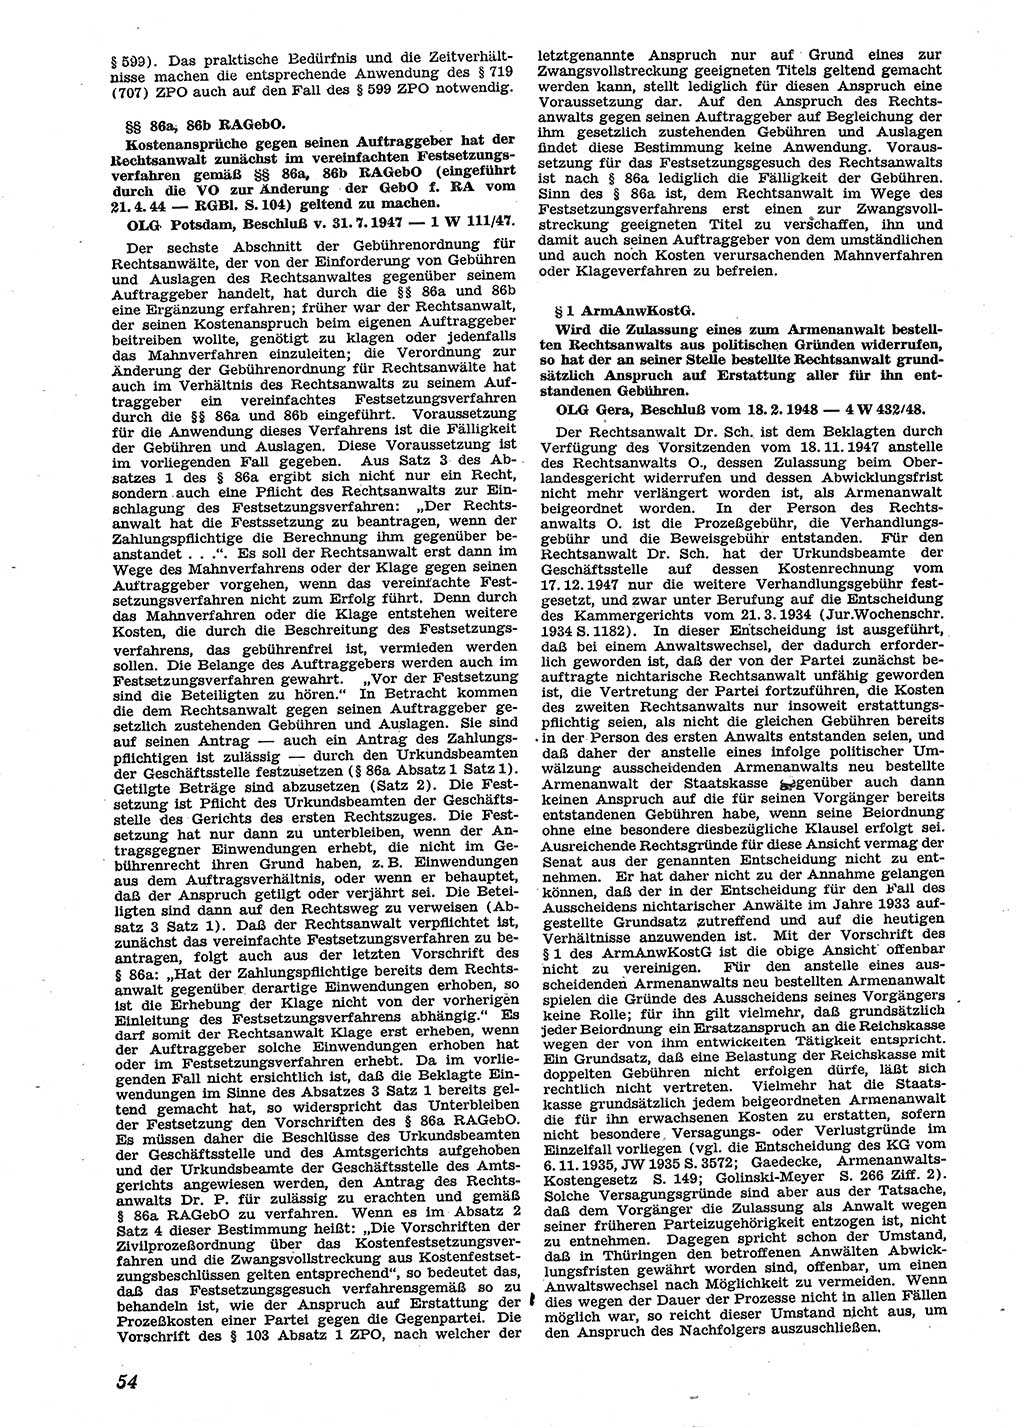 Neue Justiz (NJ), Zeitschrift für Recht und Rechtswissenschaft [Sowjetische Besatzungszone (SBZ) Deutschland], 2. Jahrgang 1948, Seite 54 (NJ SBZ Dtl. 1948, S. 54)